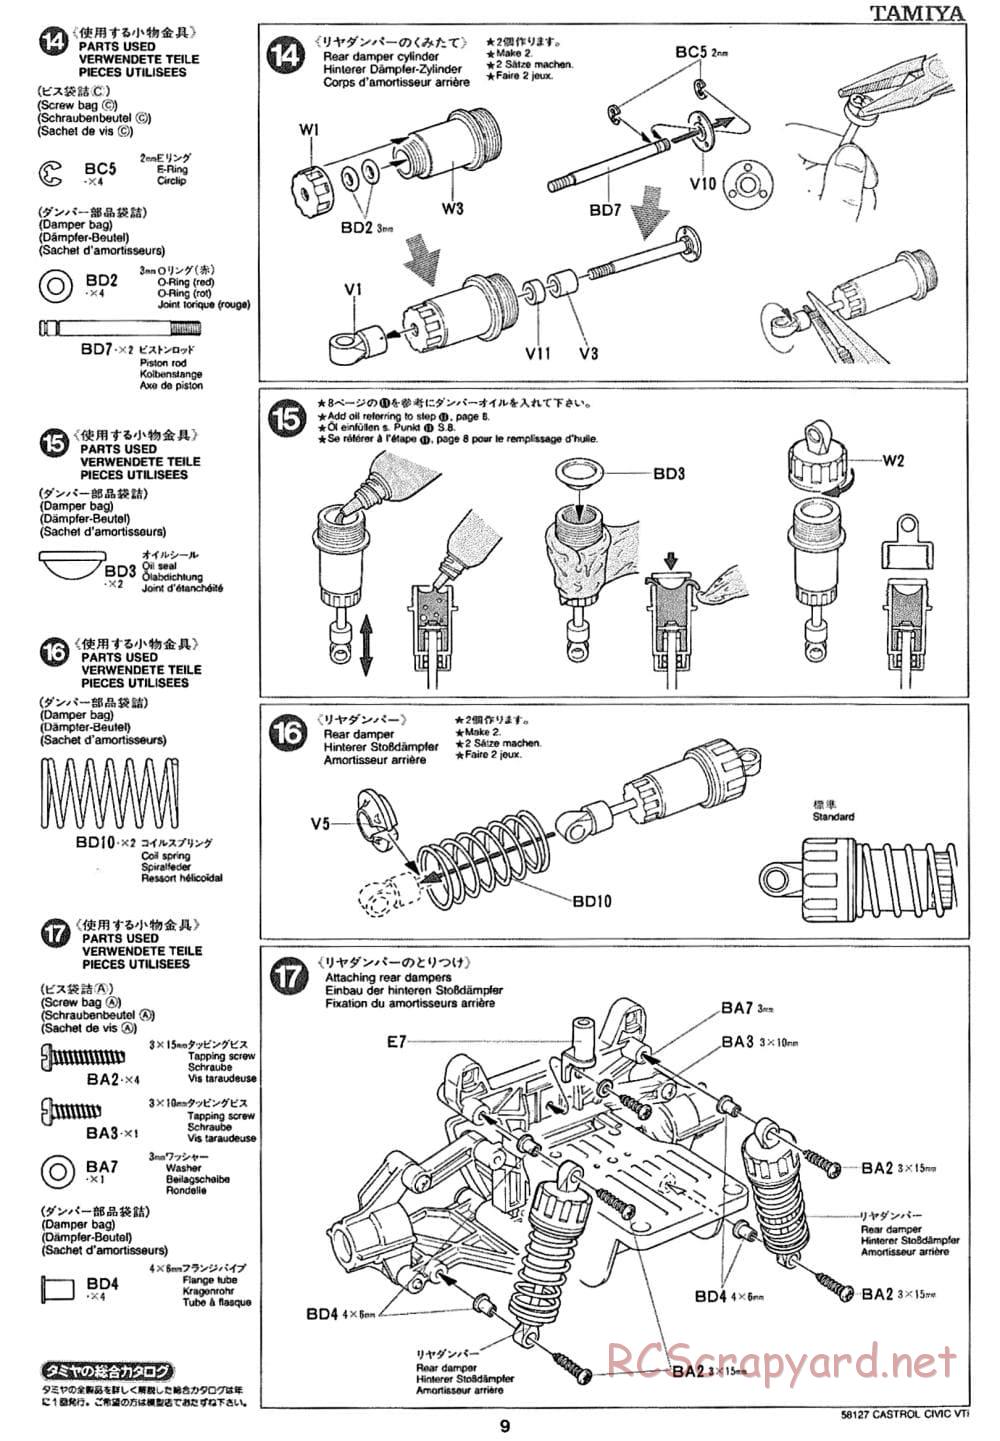 Tamiya - Castrol Honda Civic VTi - FF-01 Chassis - Manual - Page 9